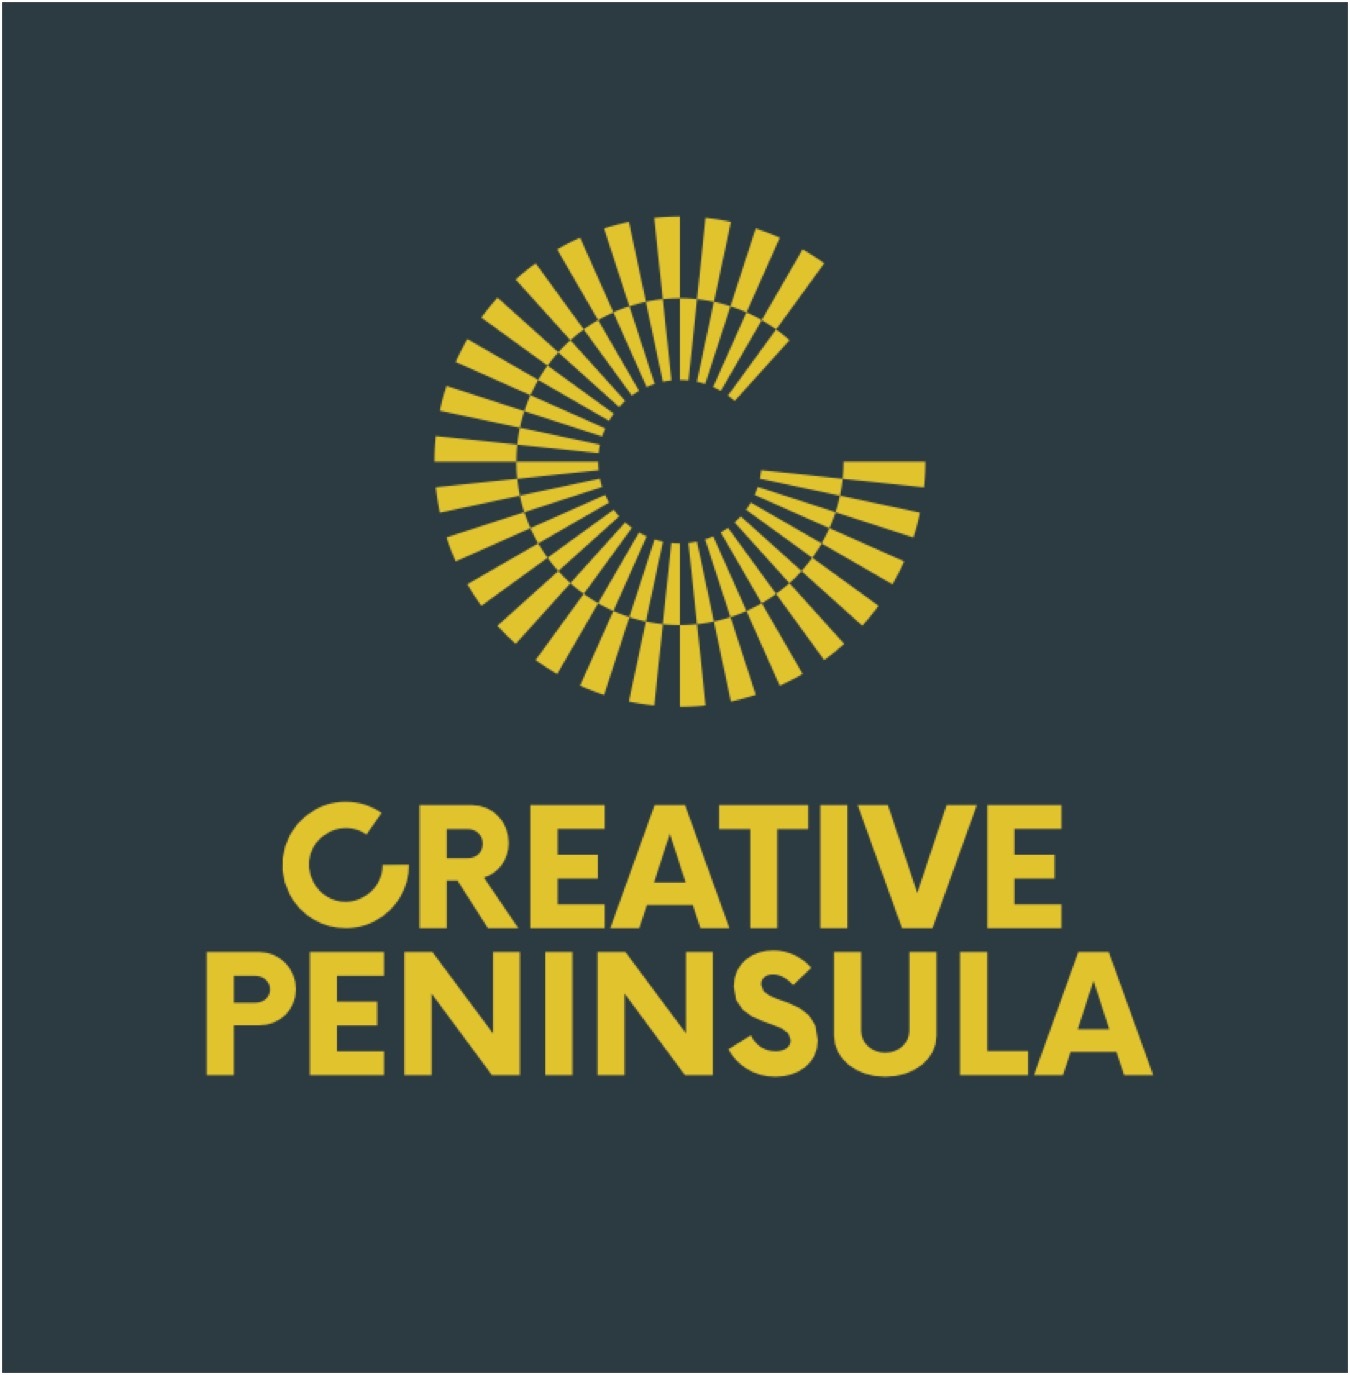 Creative Peninsula draft logo